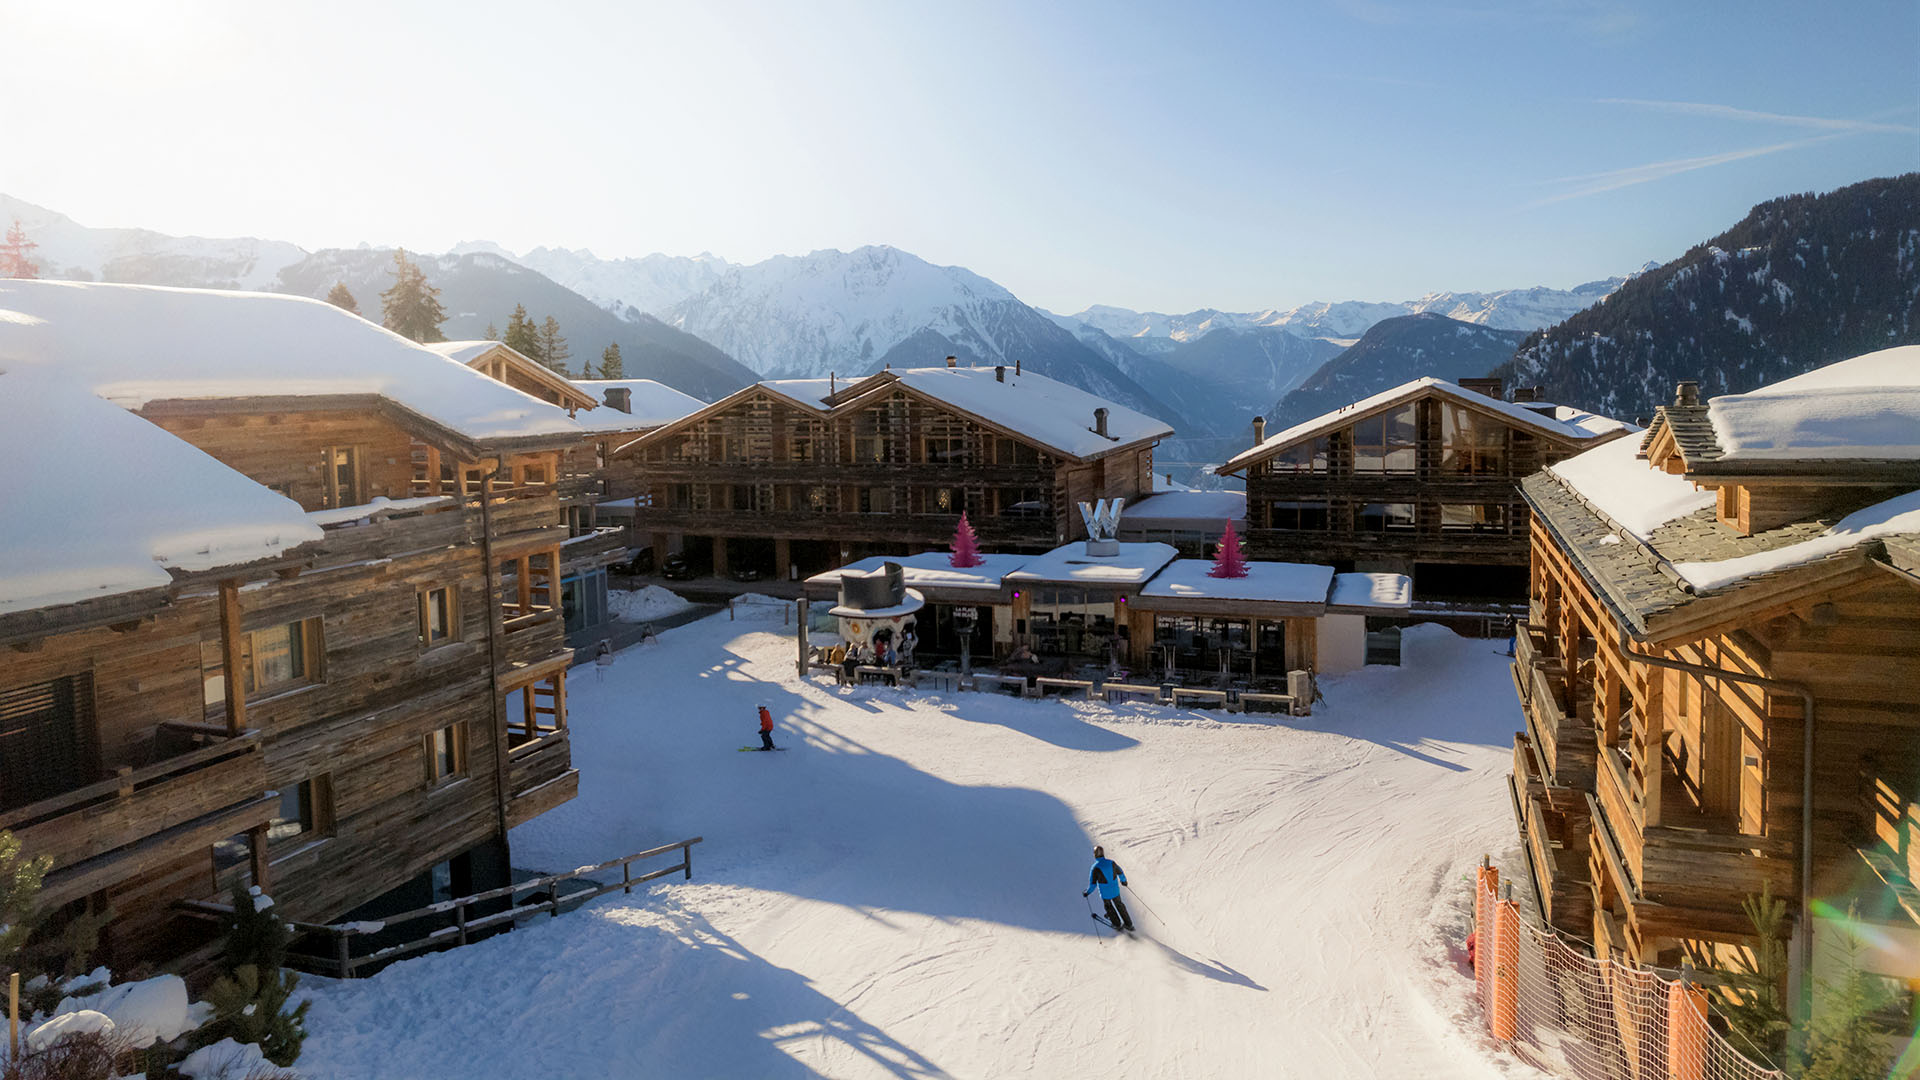 W Verbier wooden ski chalets, skiers skiing in